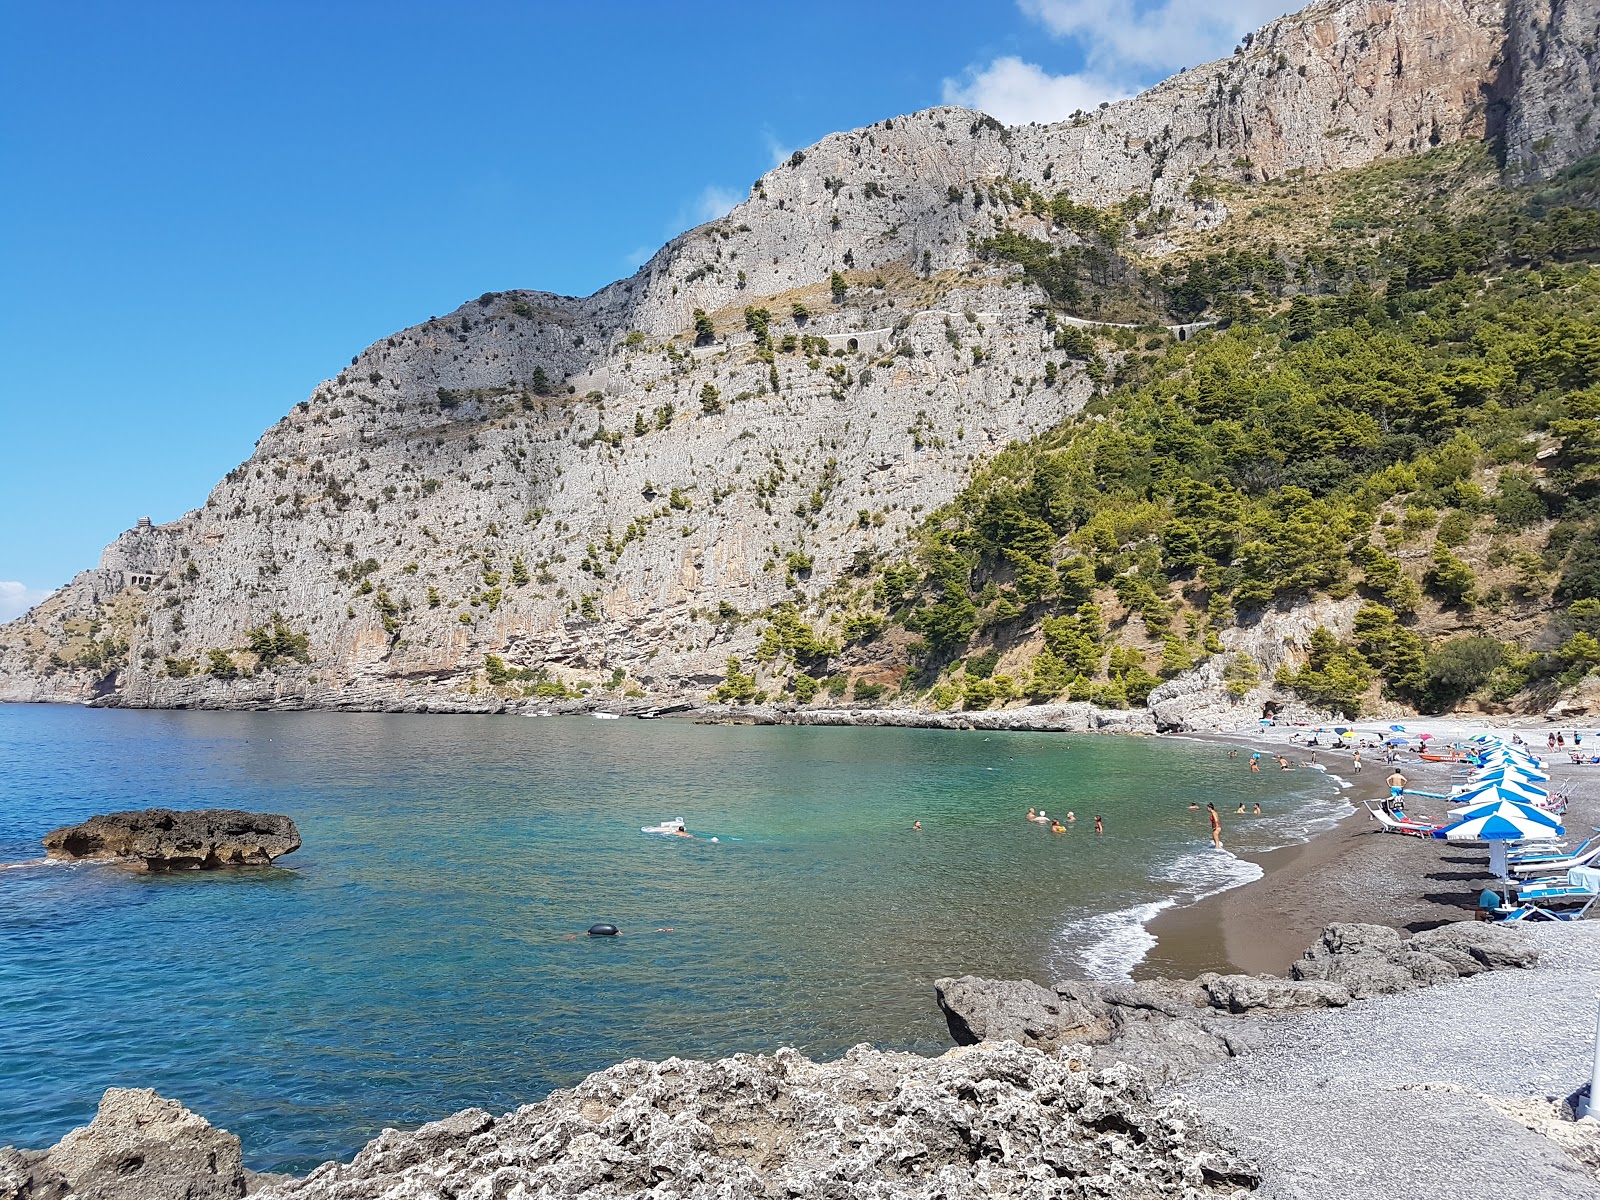 Valokuva Spiaggia Acquafreddaista. pinnalla ruskea hieno pikkukivi:n kanssa